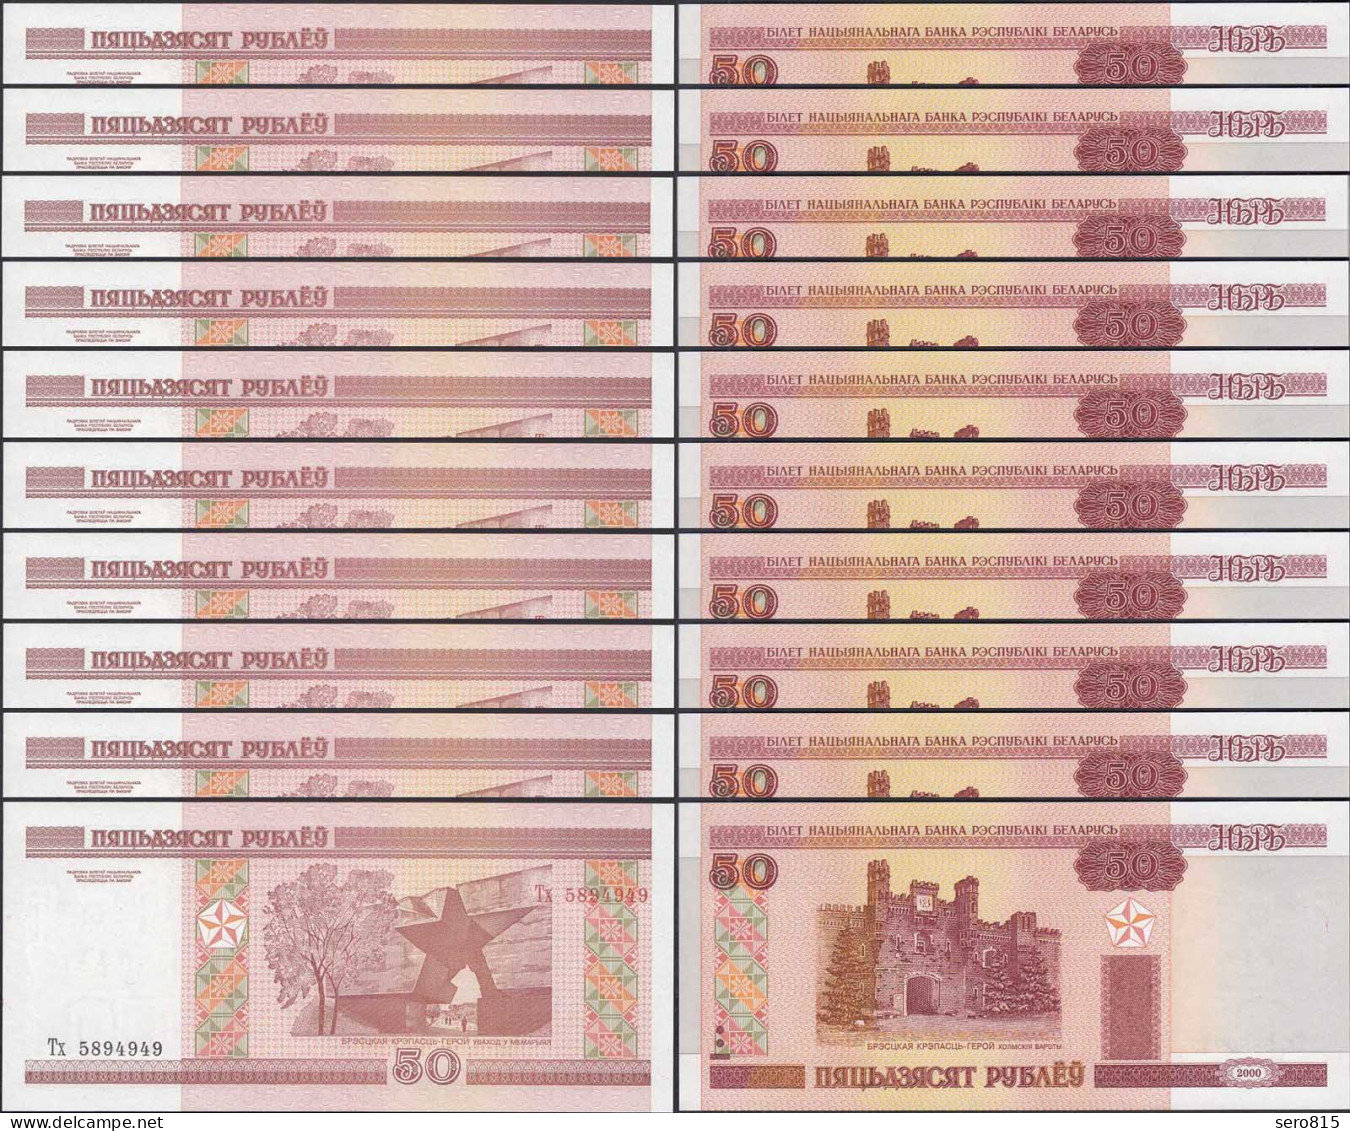 Weißrussland - Belarus 10 Stück á 50 Rubel 2000 Pick 25a UNC (1)  (89131 - Other - Europe